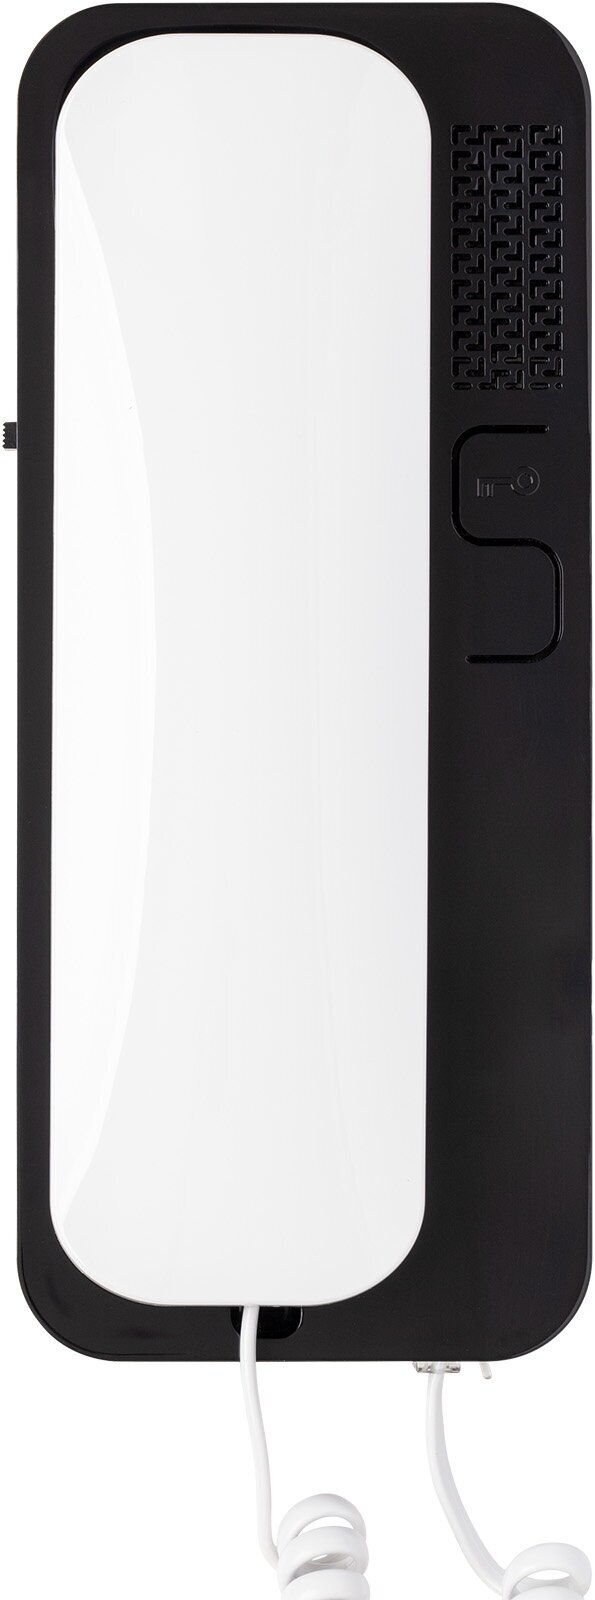 Аудиотрубка Unifon Smart U бело-чёрная